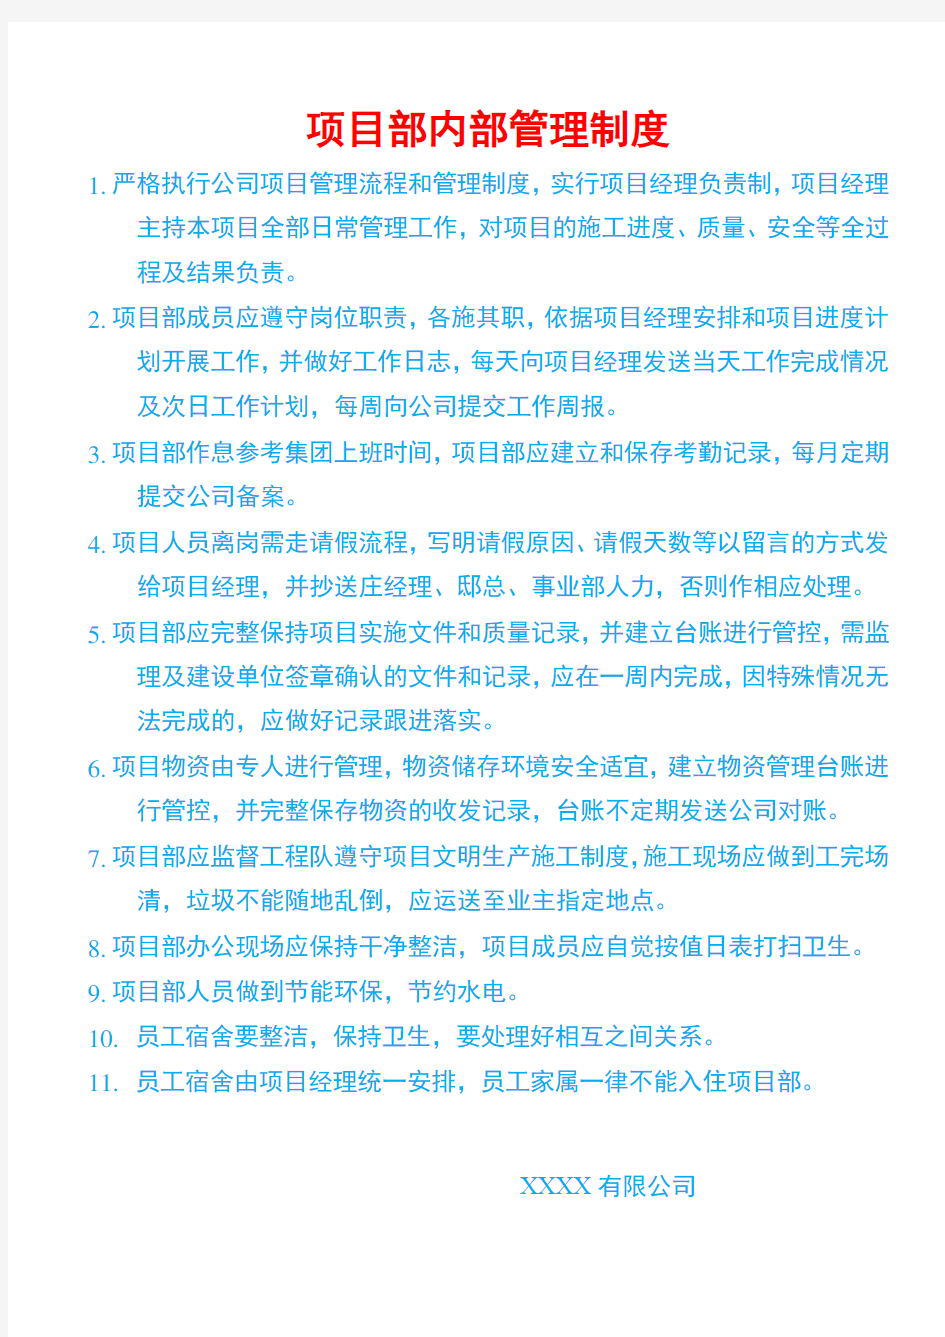 中国联通 分公司工程项目部内部管理制度